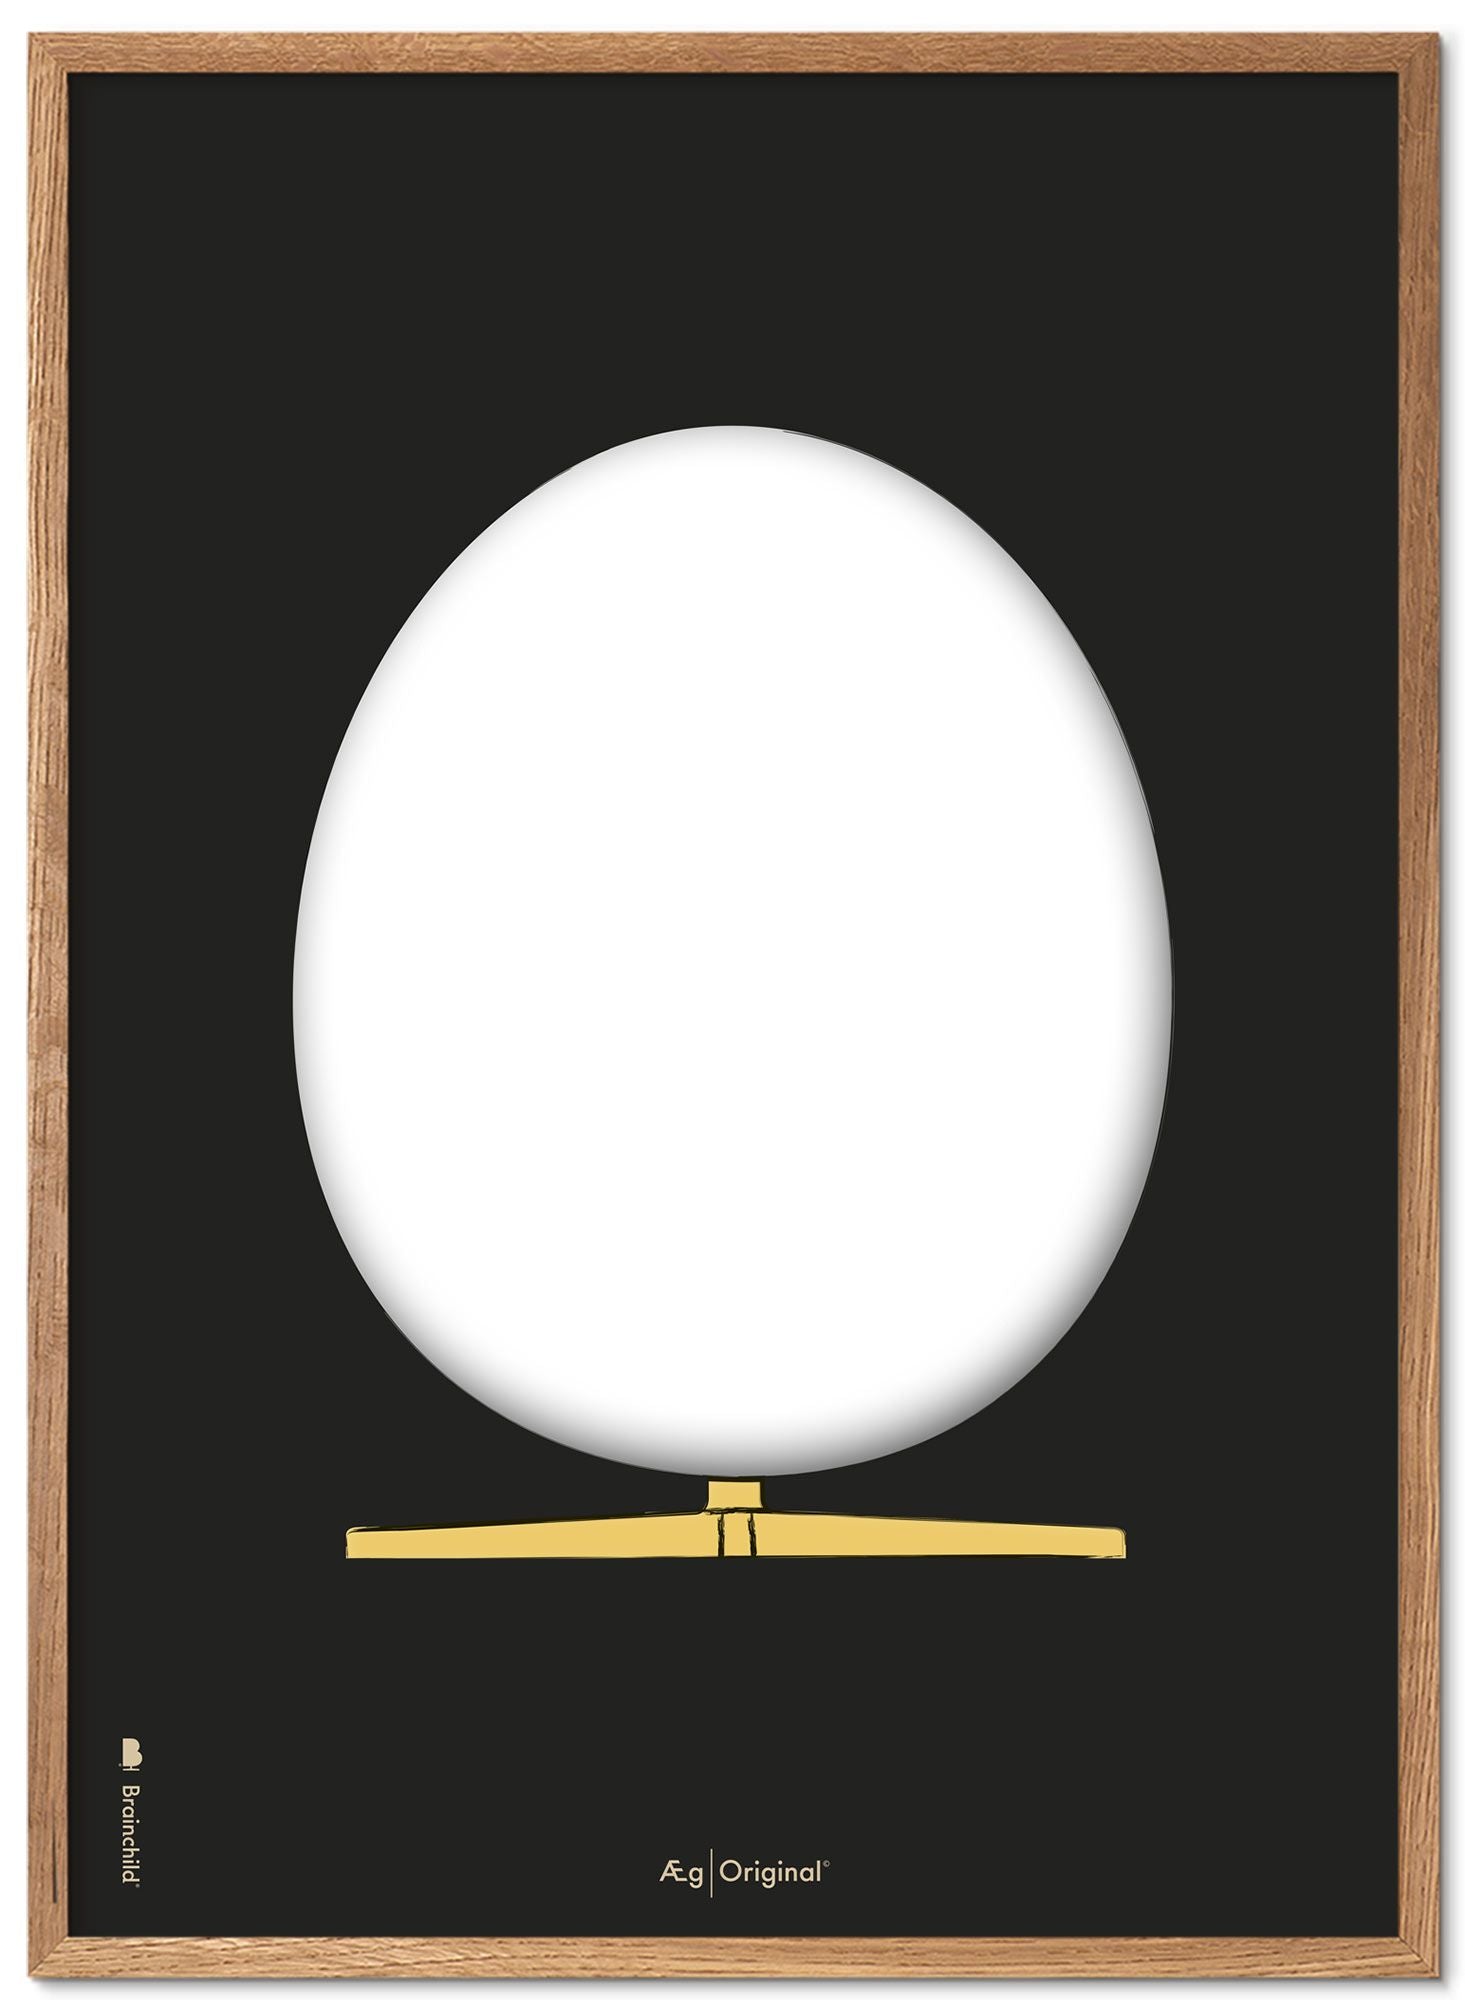 Prepare el marco de póster de boceto de diseño de huevo hecho de madera clara de 30x40 cm, fondo negro